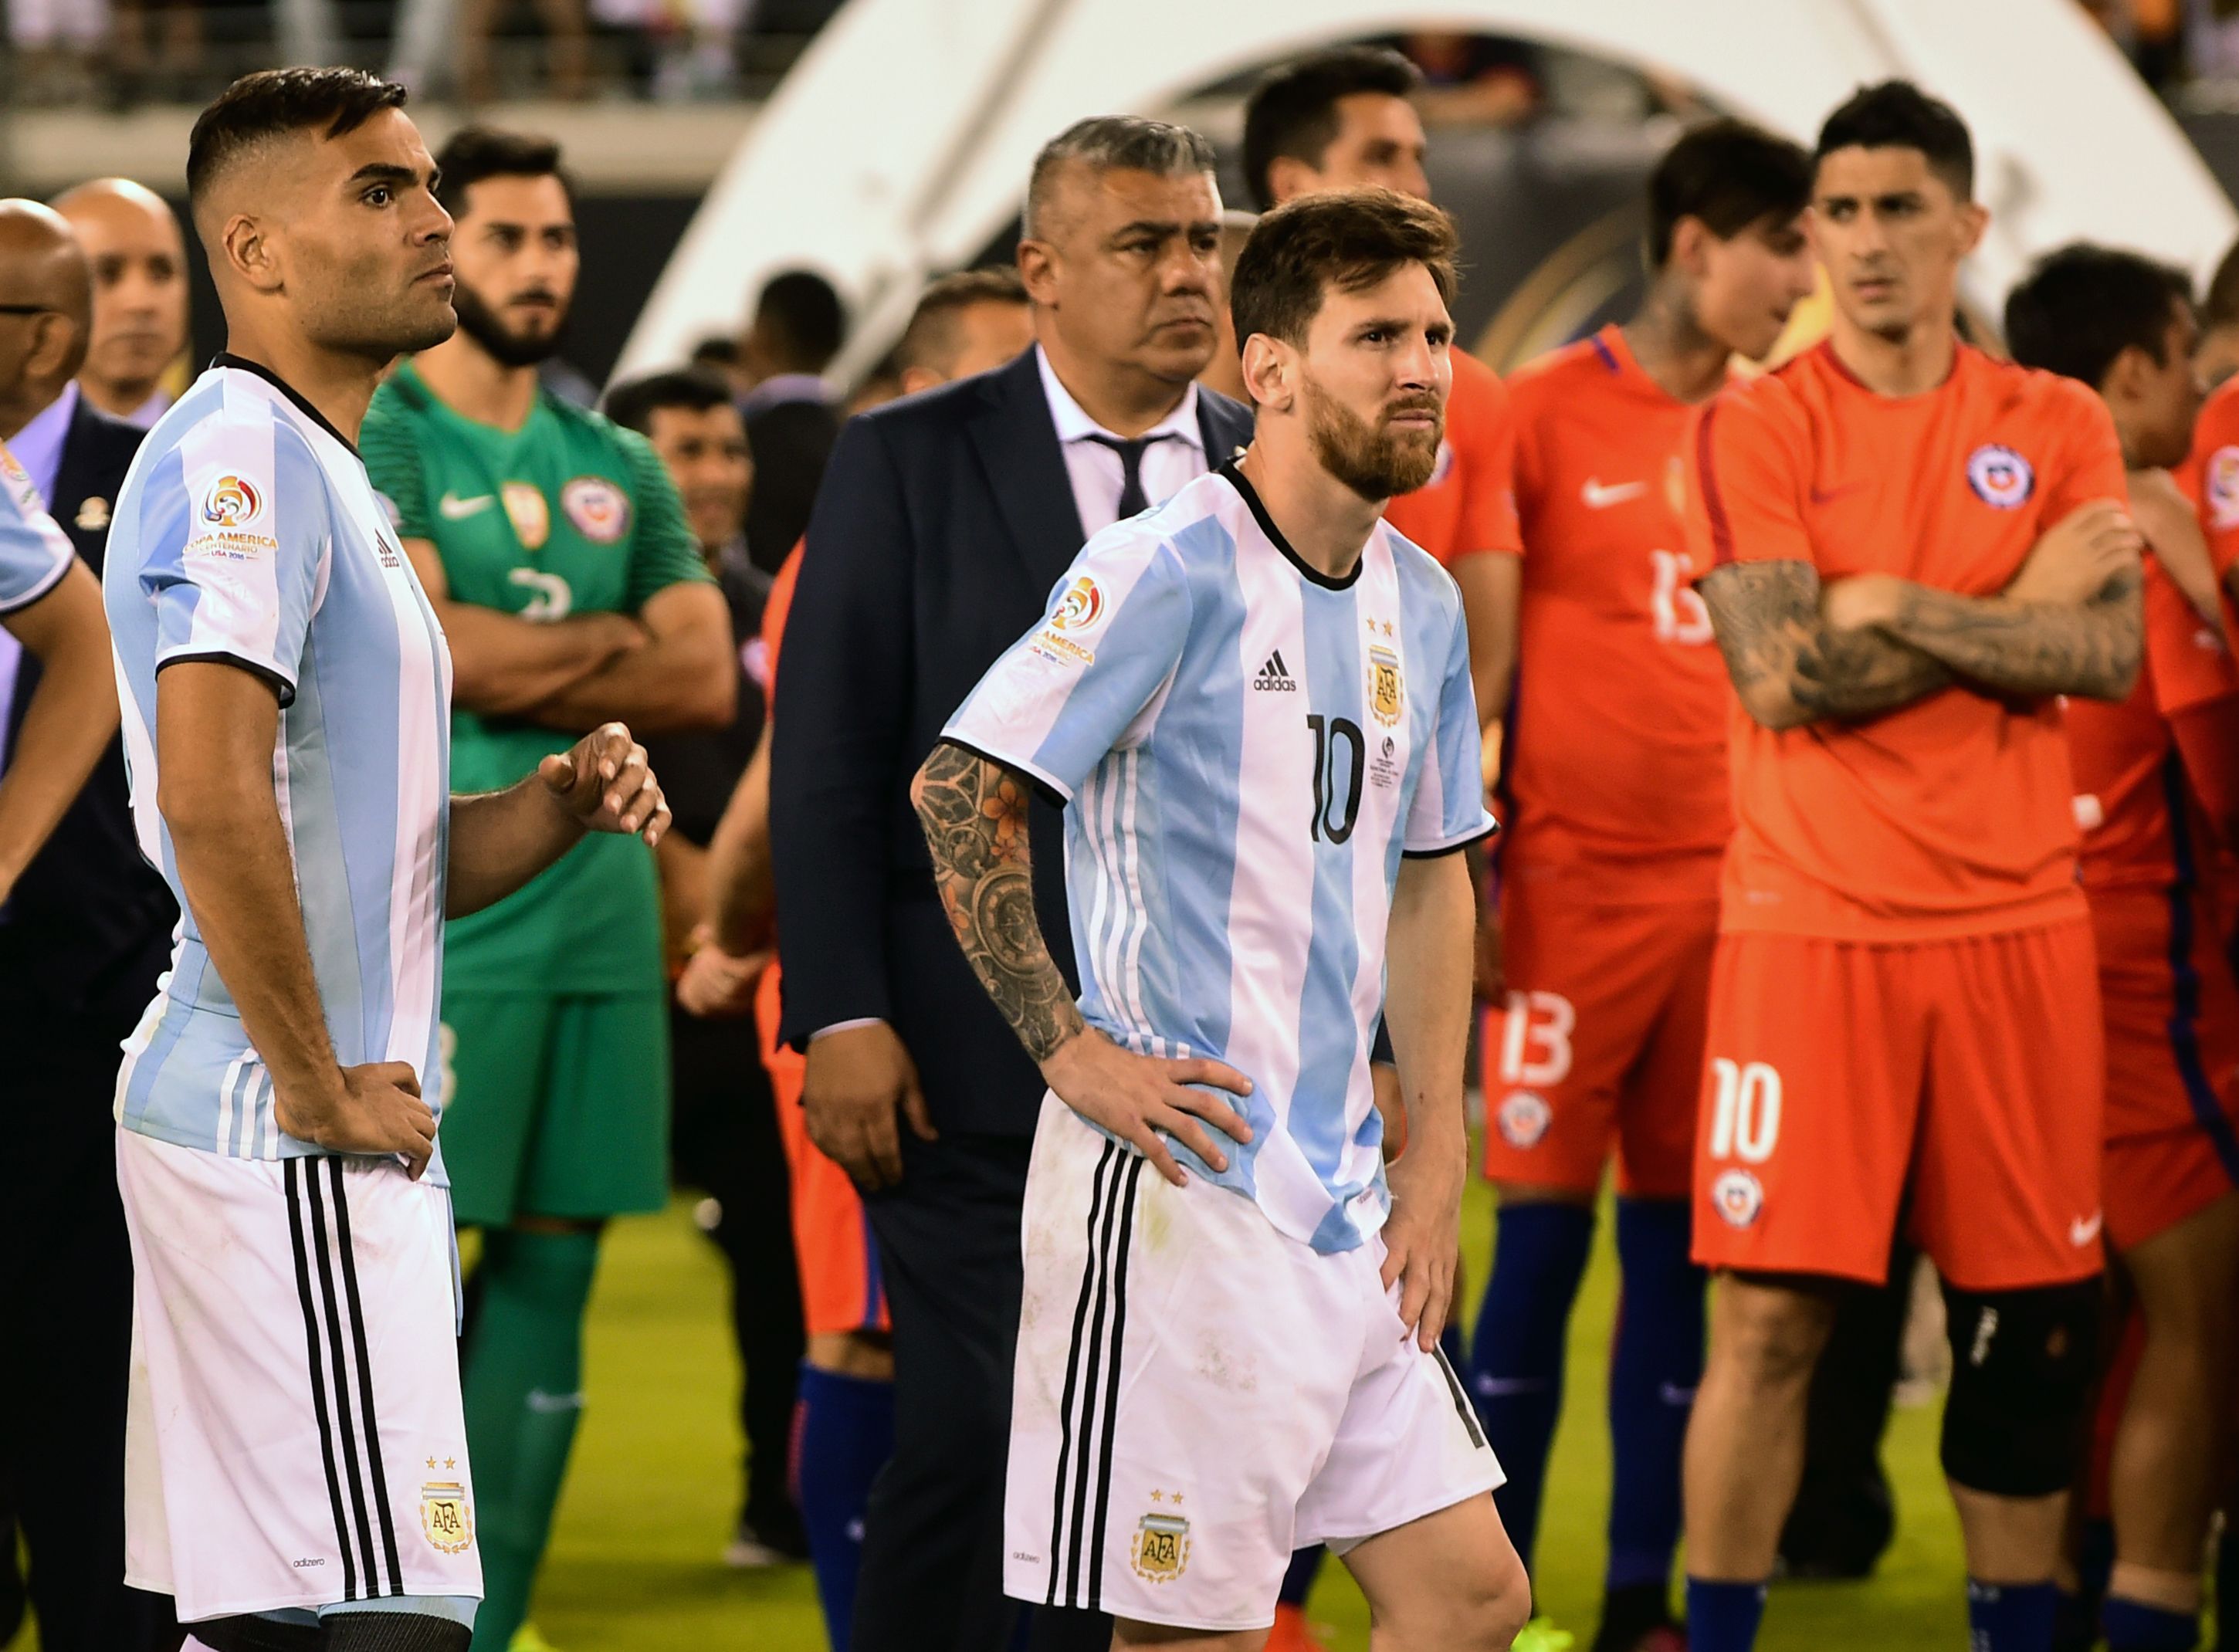 Hace 12 años, Messi rechazó jugar la selección de España | | Deportes | El Universo